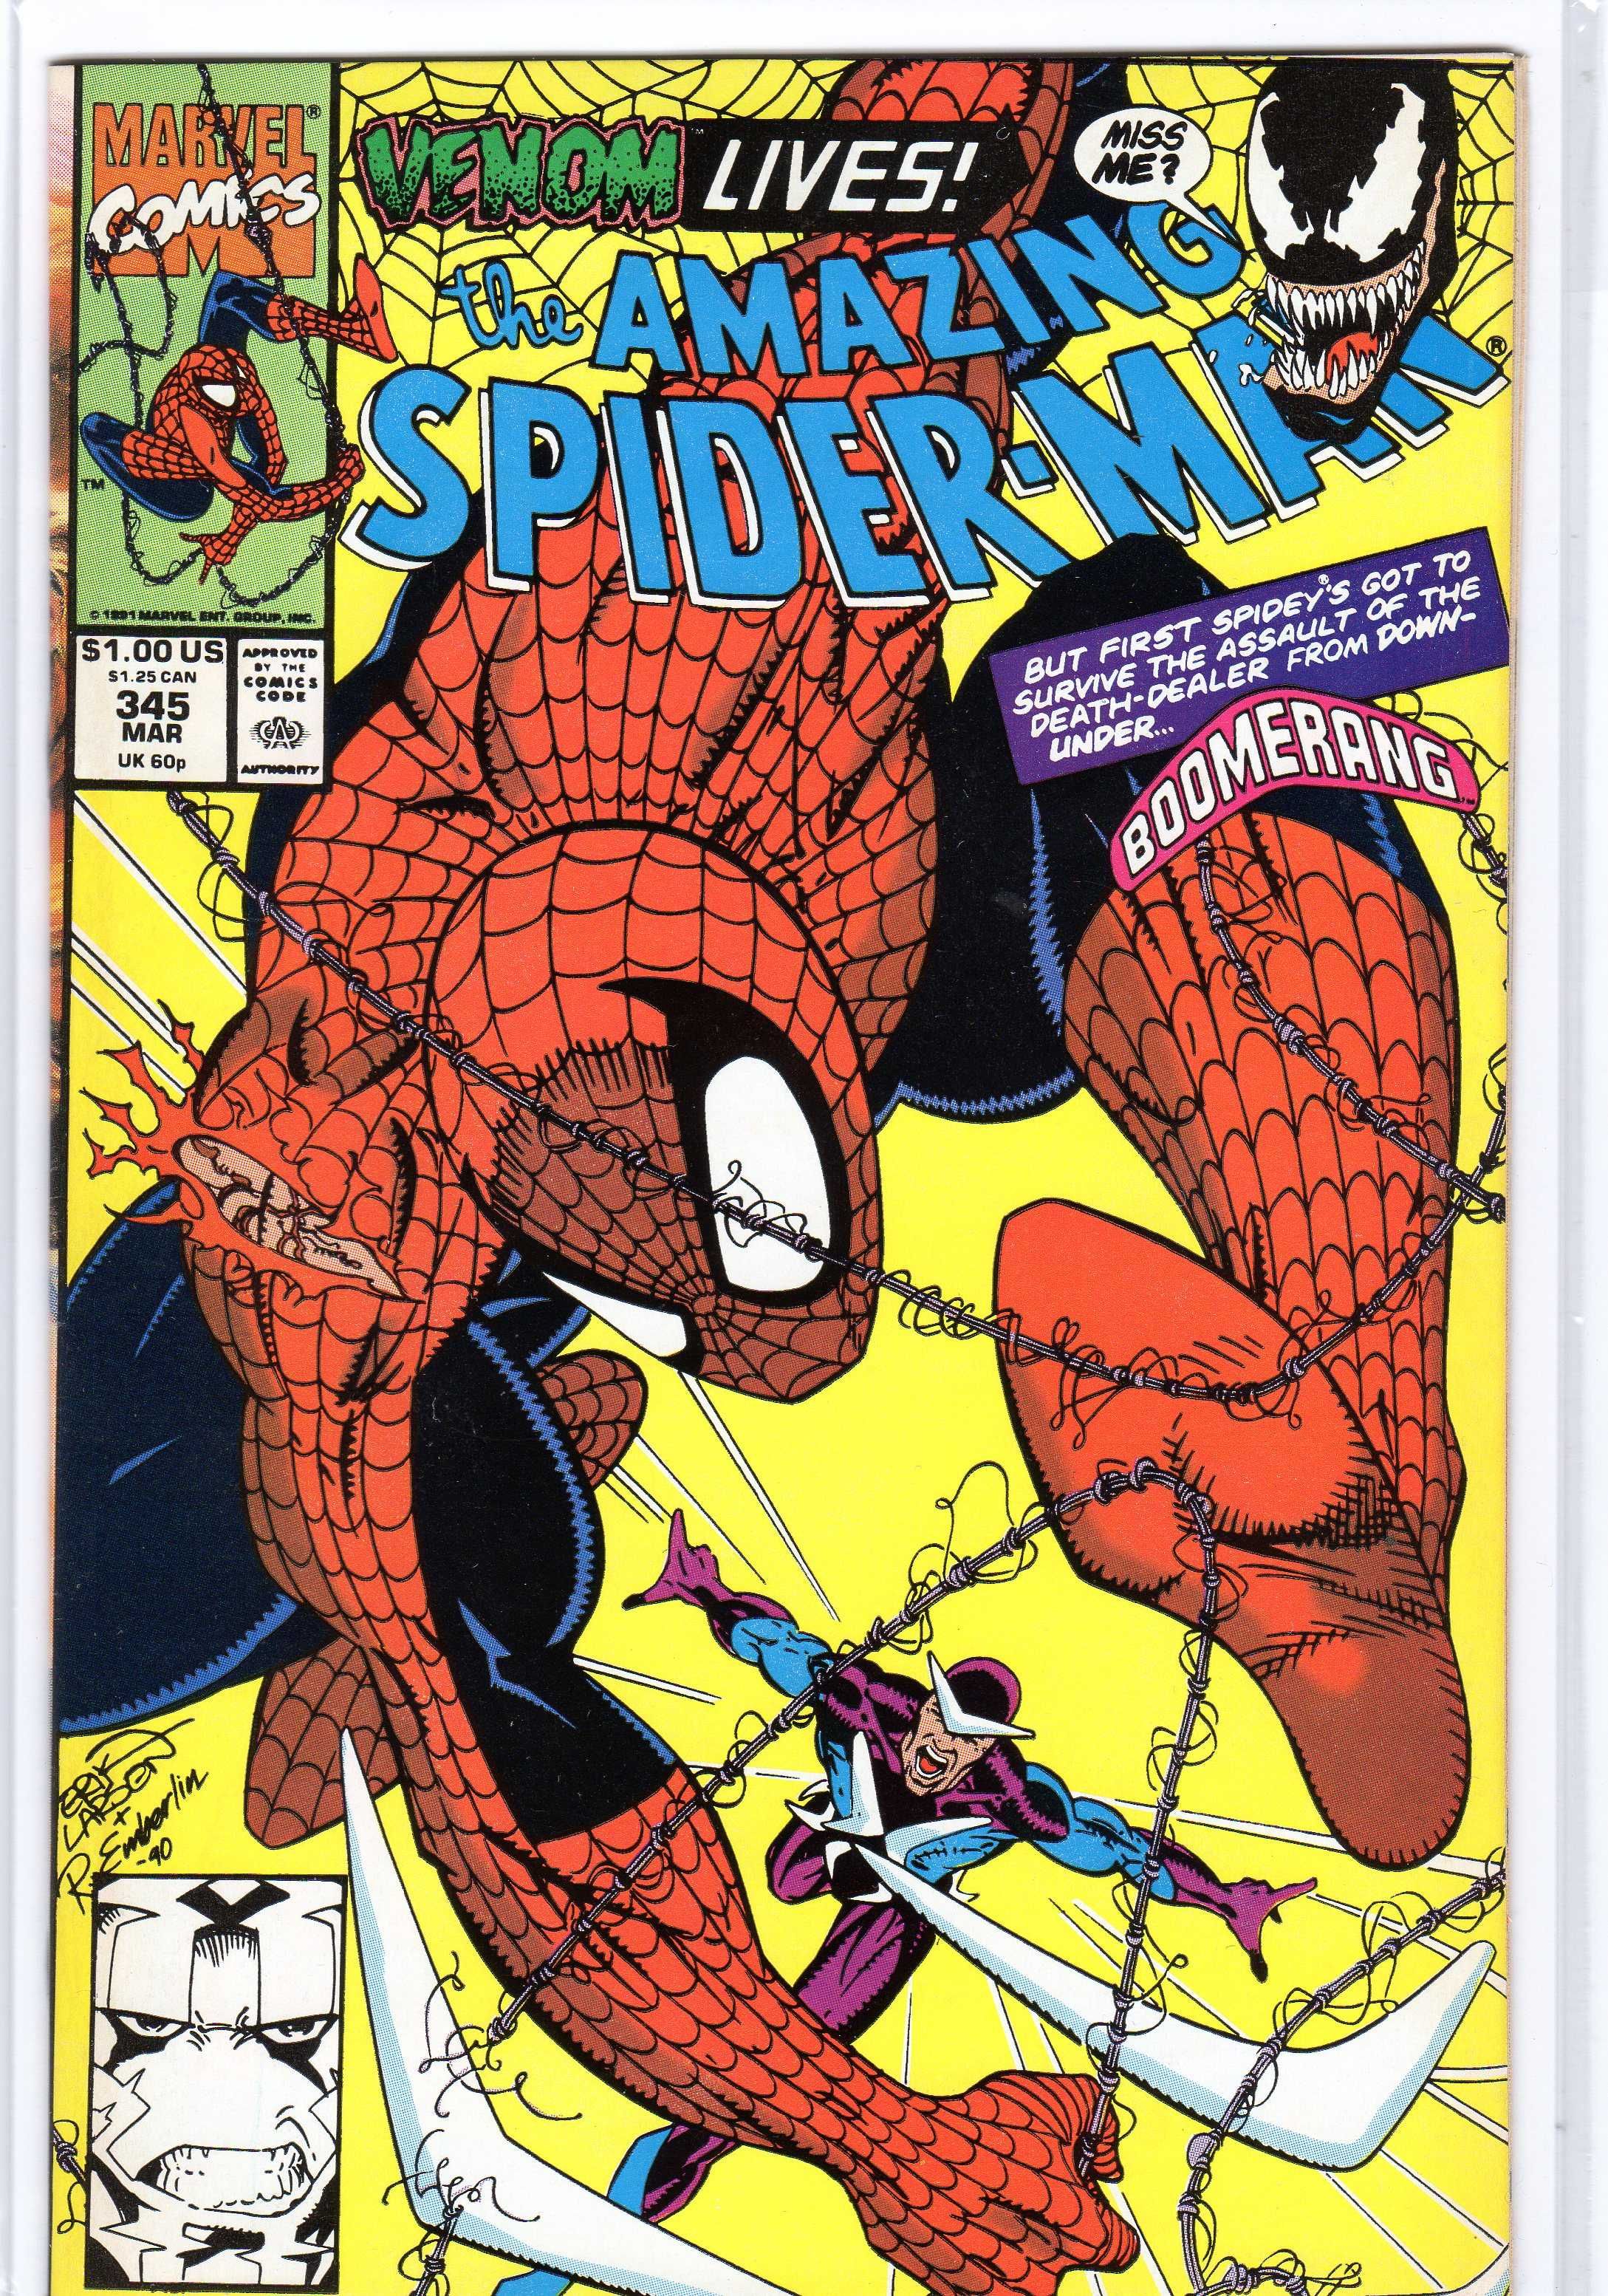 The Amazing Spider-Man #345 Venom Lives benzi desenate